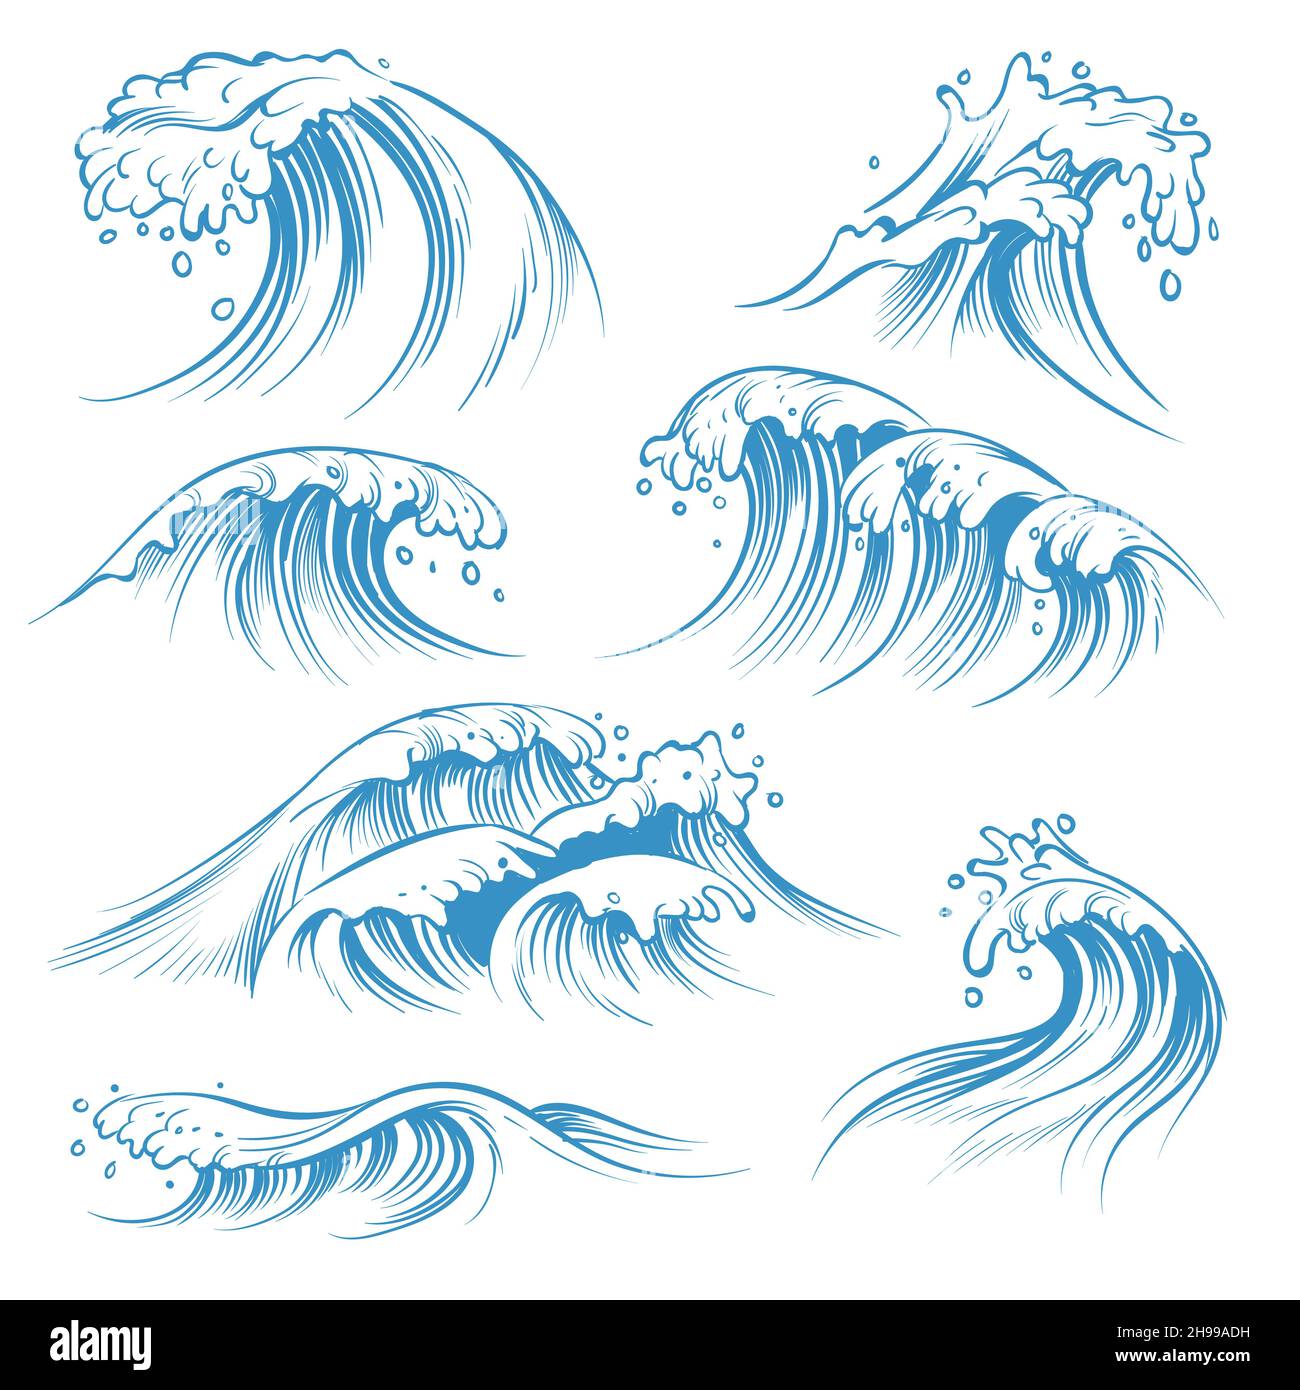 Handgezeichnete Wellen. Skizzieren Sie die Wellen der Wellen. Handgezeichnetes Surfen Sturm Wind Wasser Doodle Vintage Elemente Stock Vektor